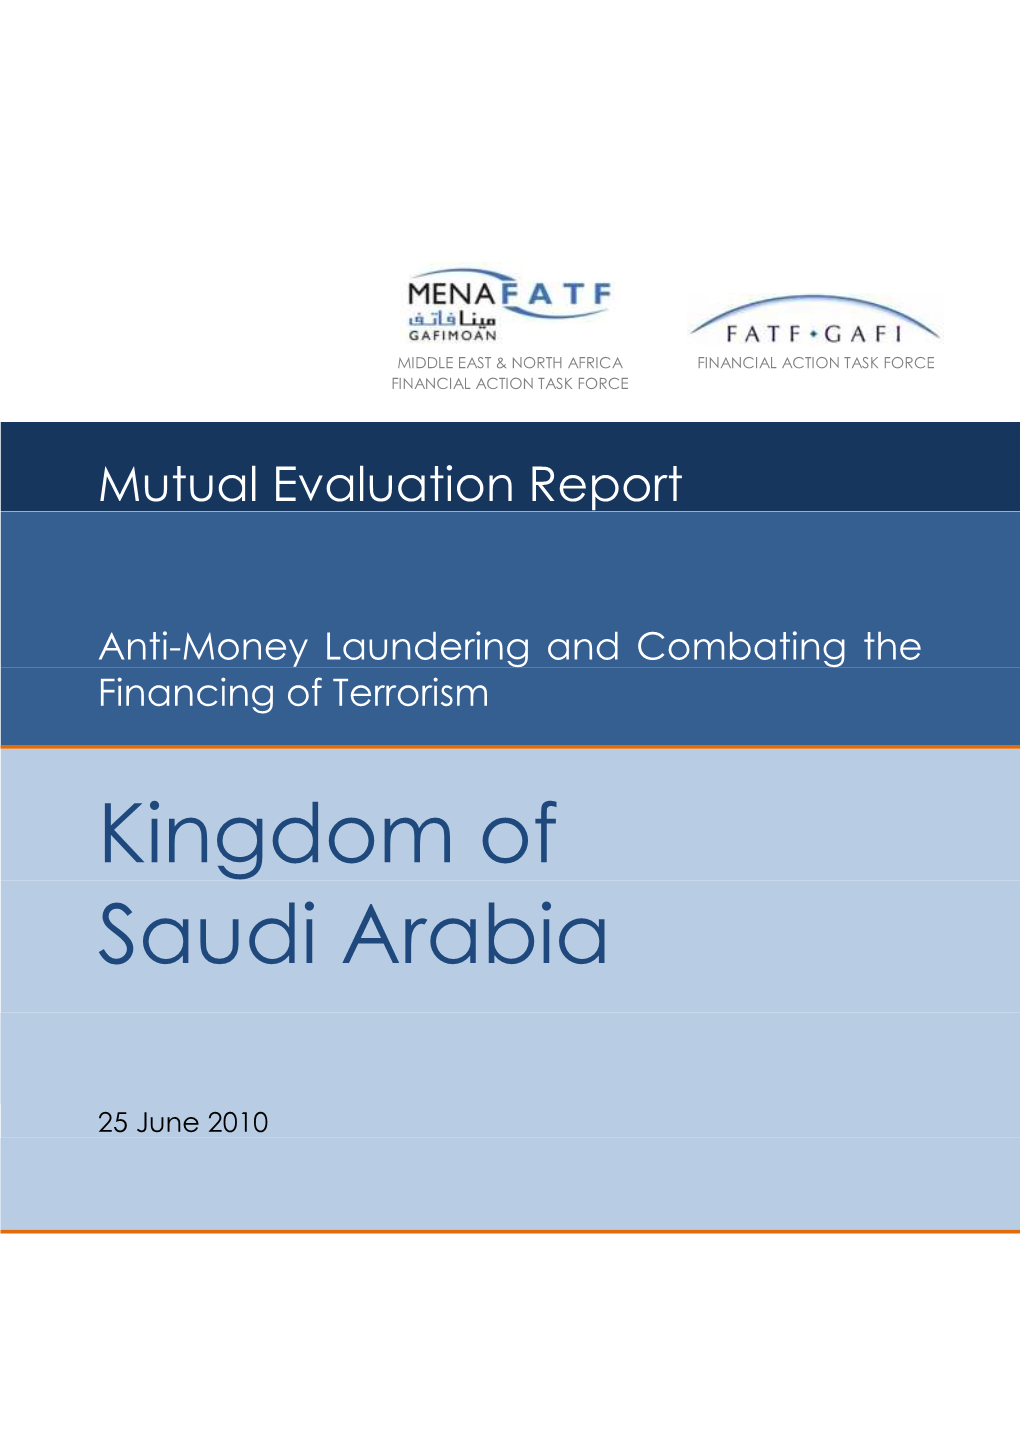 Earlier Report on Saudi Arabia's Measures to Combat Money